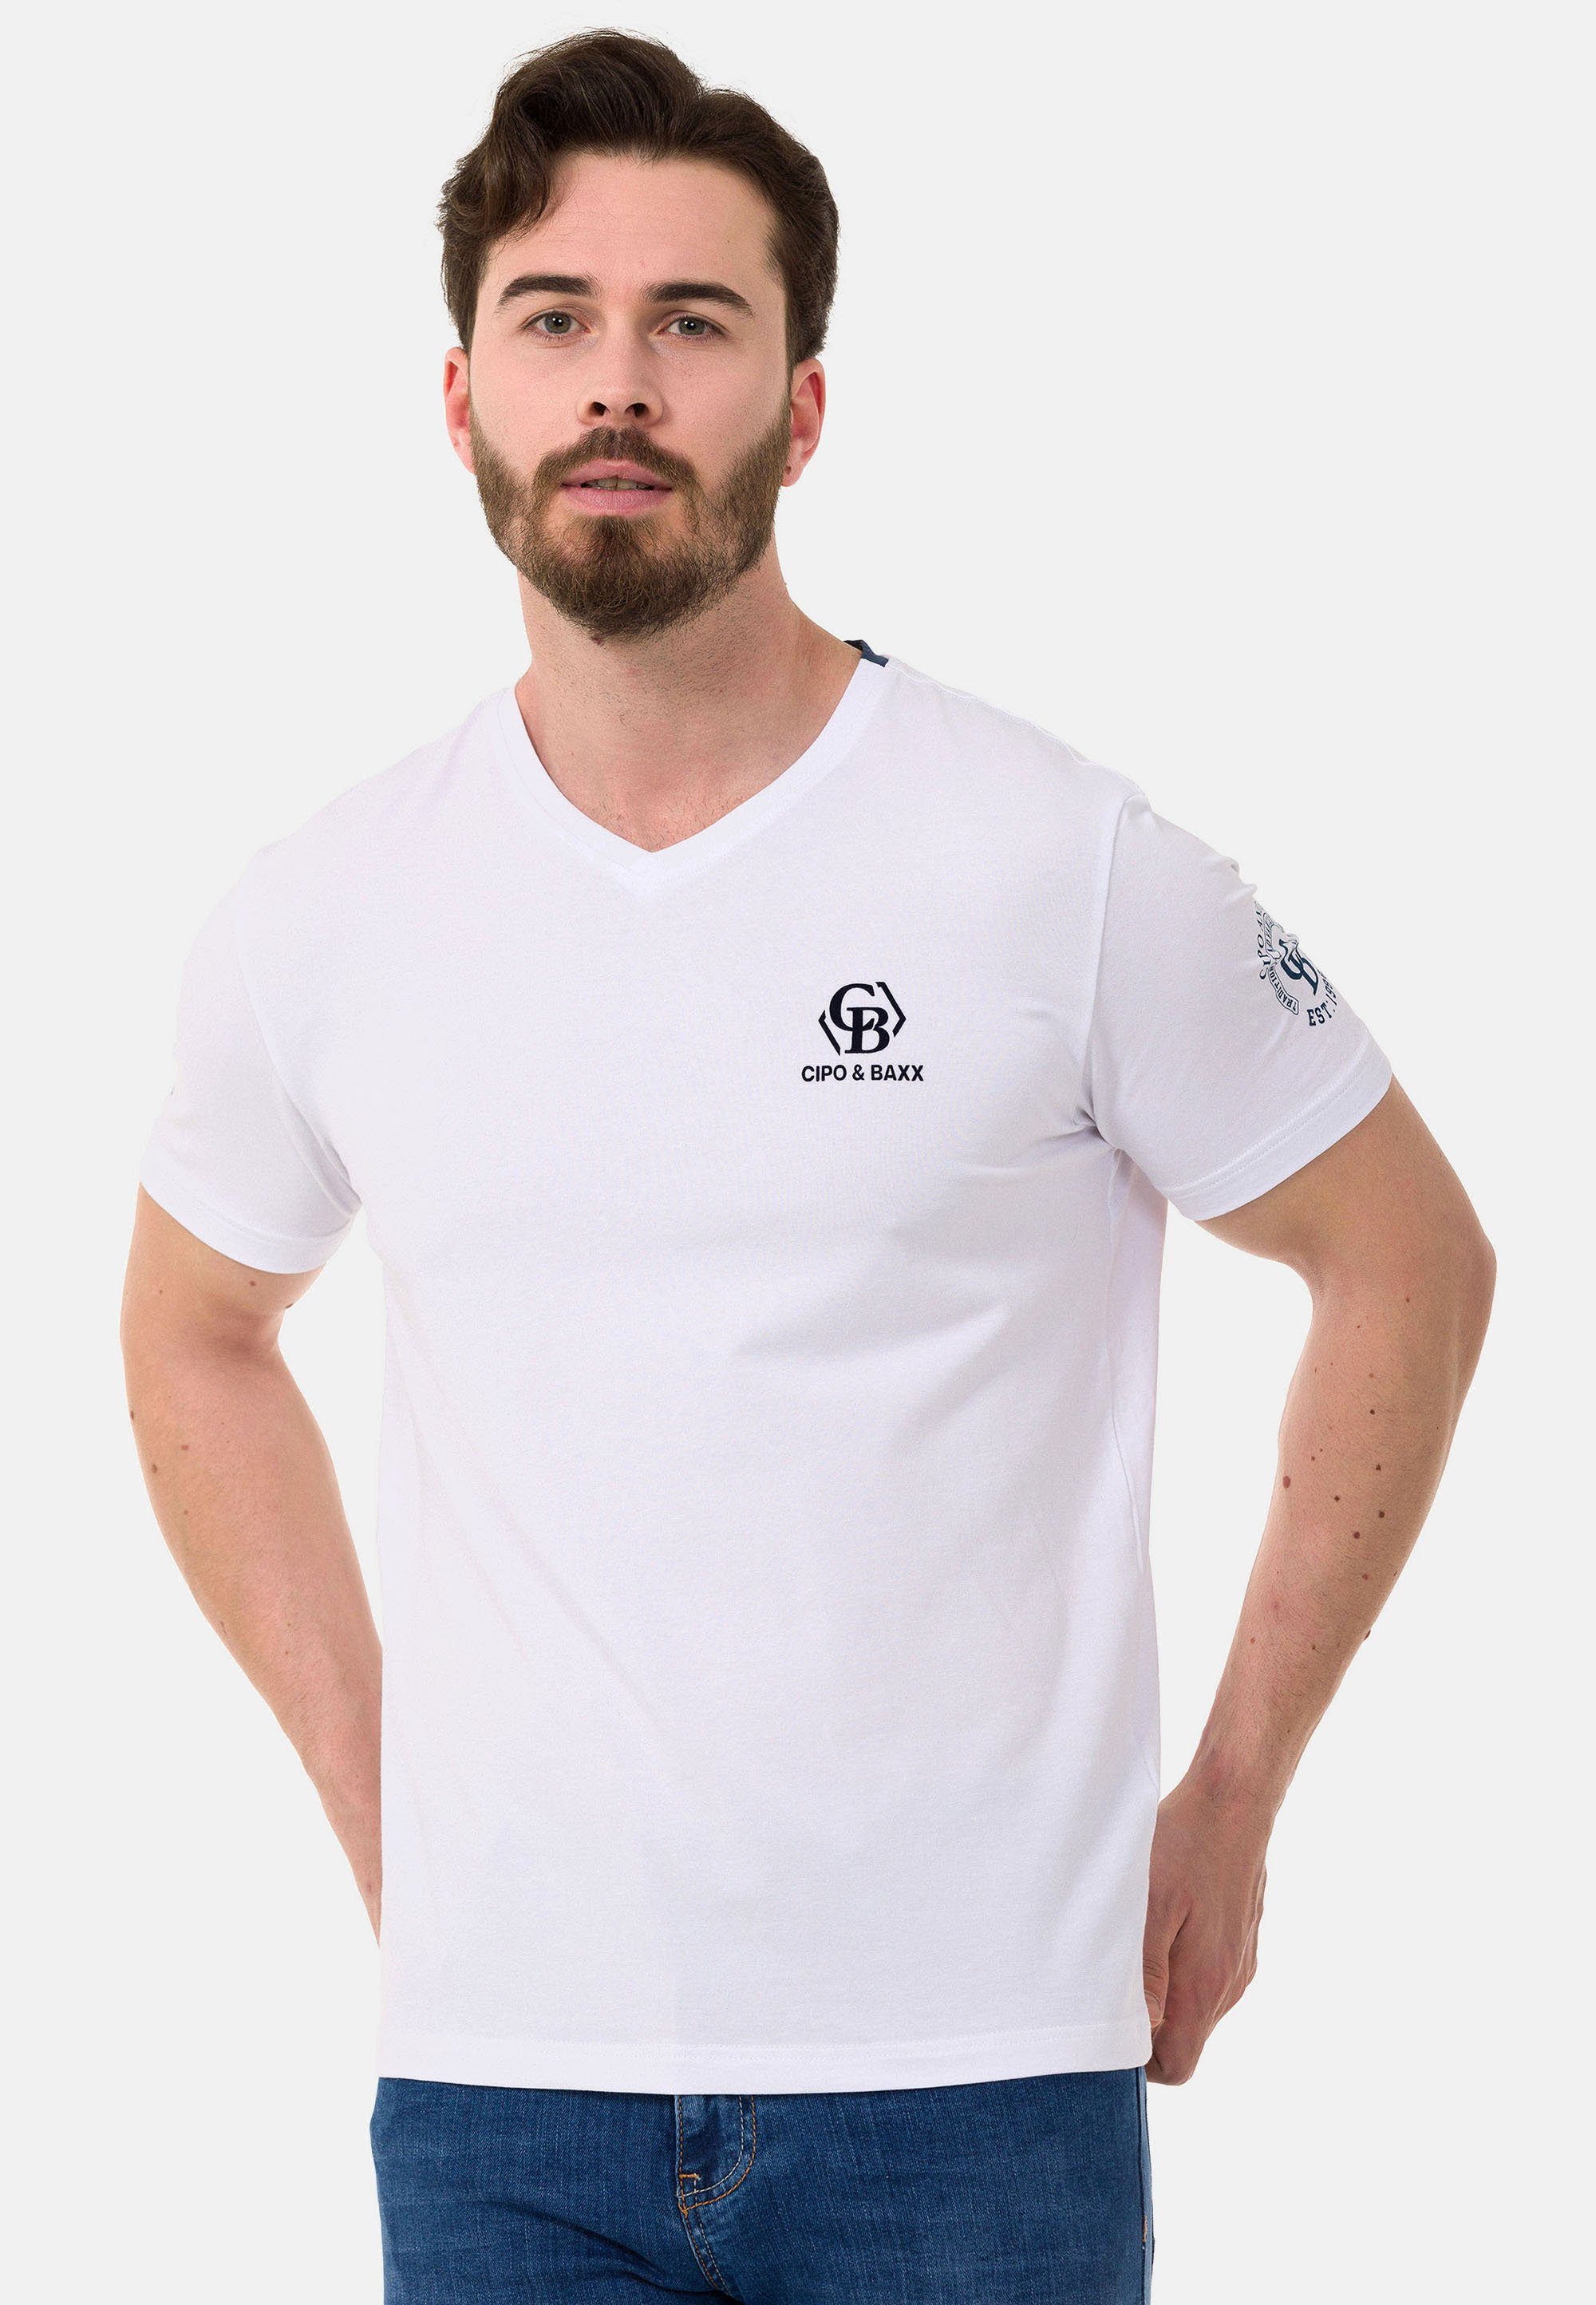 Cipo & Baxx T-Shirt mit dezenten Markenlogos weiß | V-Shirts